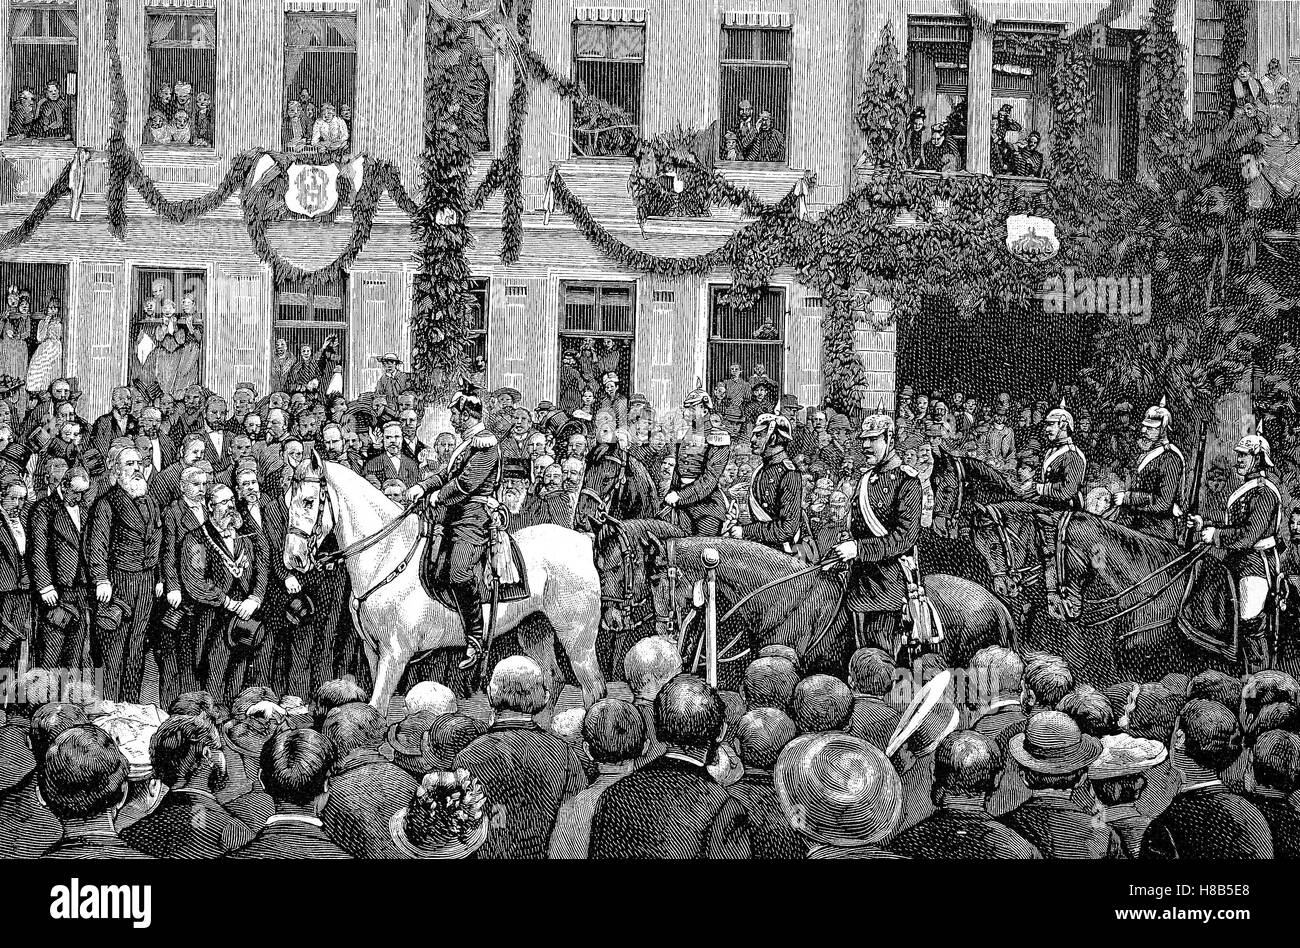 Le manovre di imperiale in Turingia, Imperatore Guglielmo II arriva in città di Muehlhausen, Xilografia dal 1892 Foto Stock